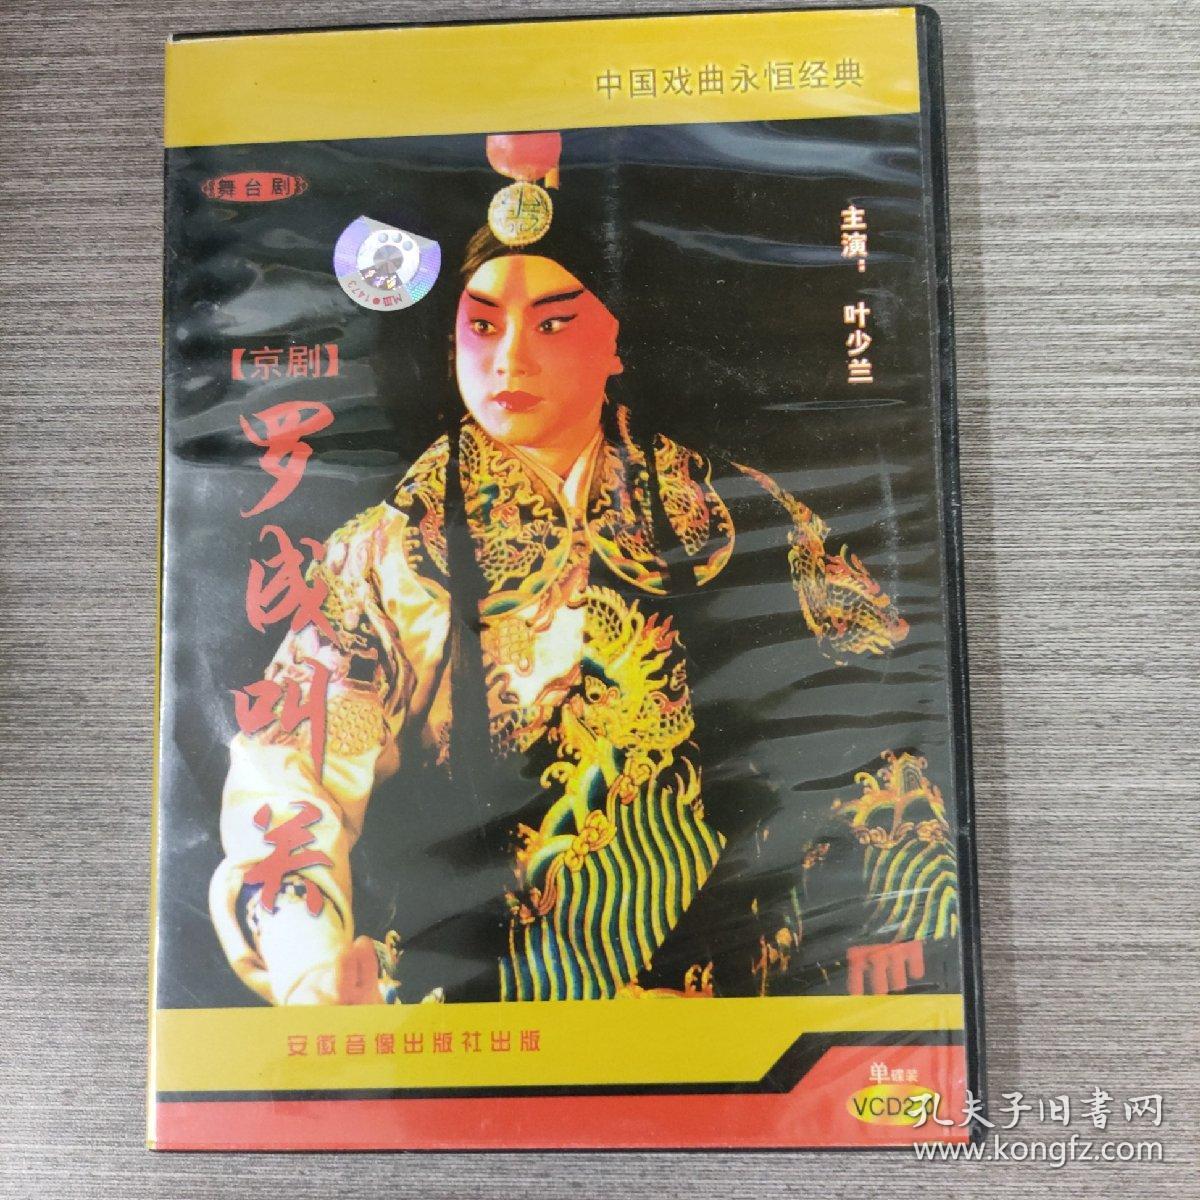 85光盘DVD：中国京剧 《罗成叫关》    一张光盘盒装